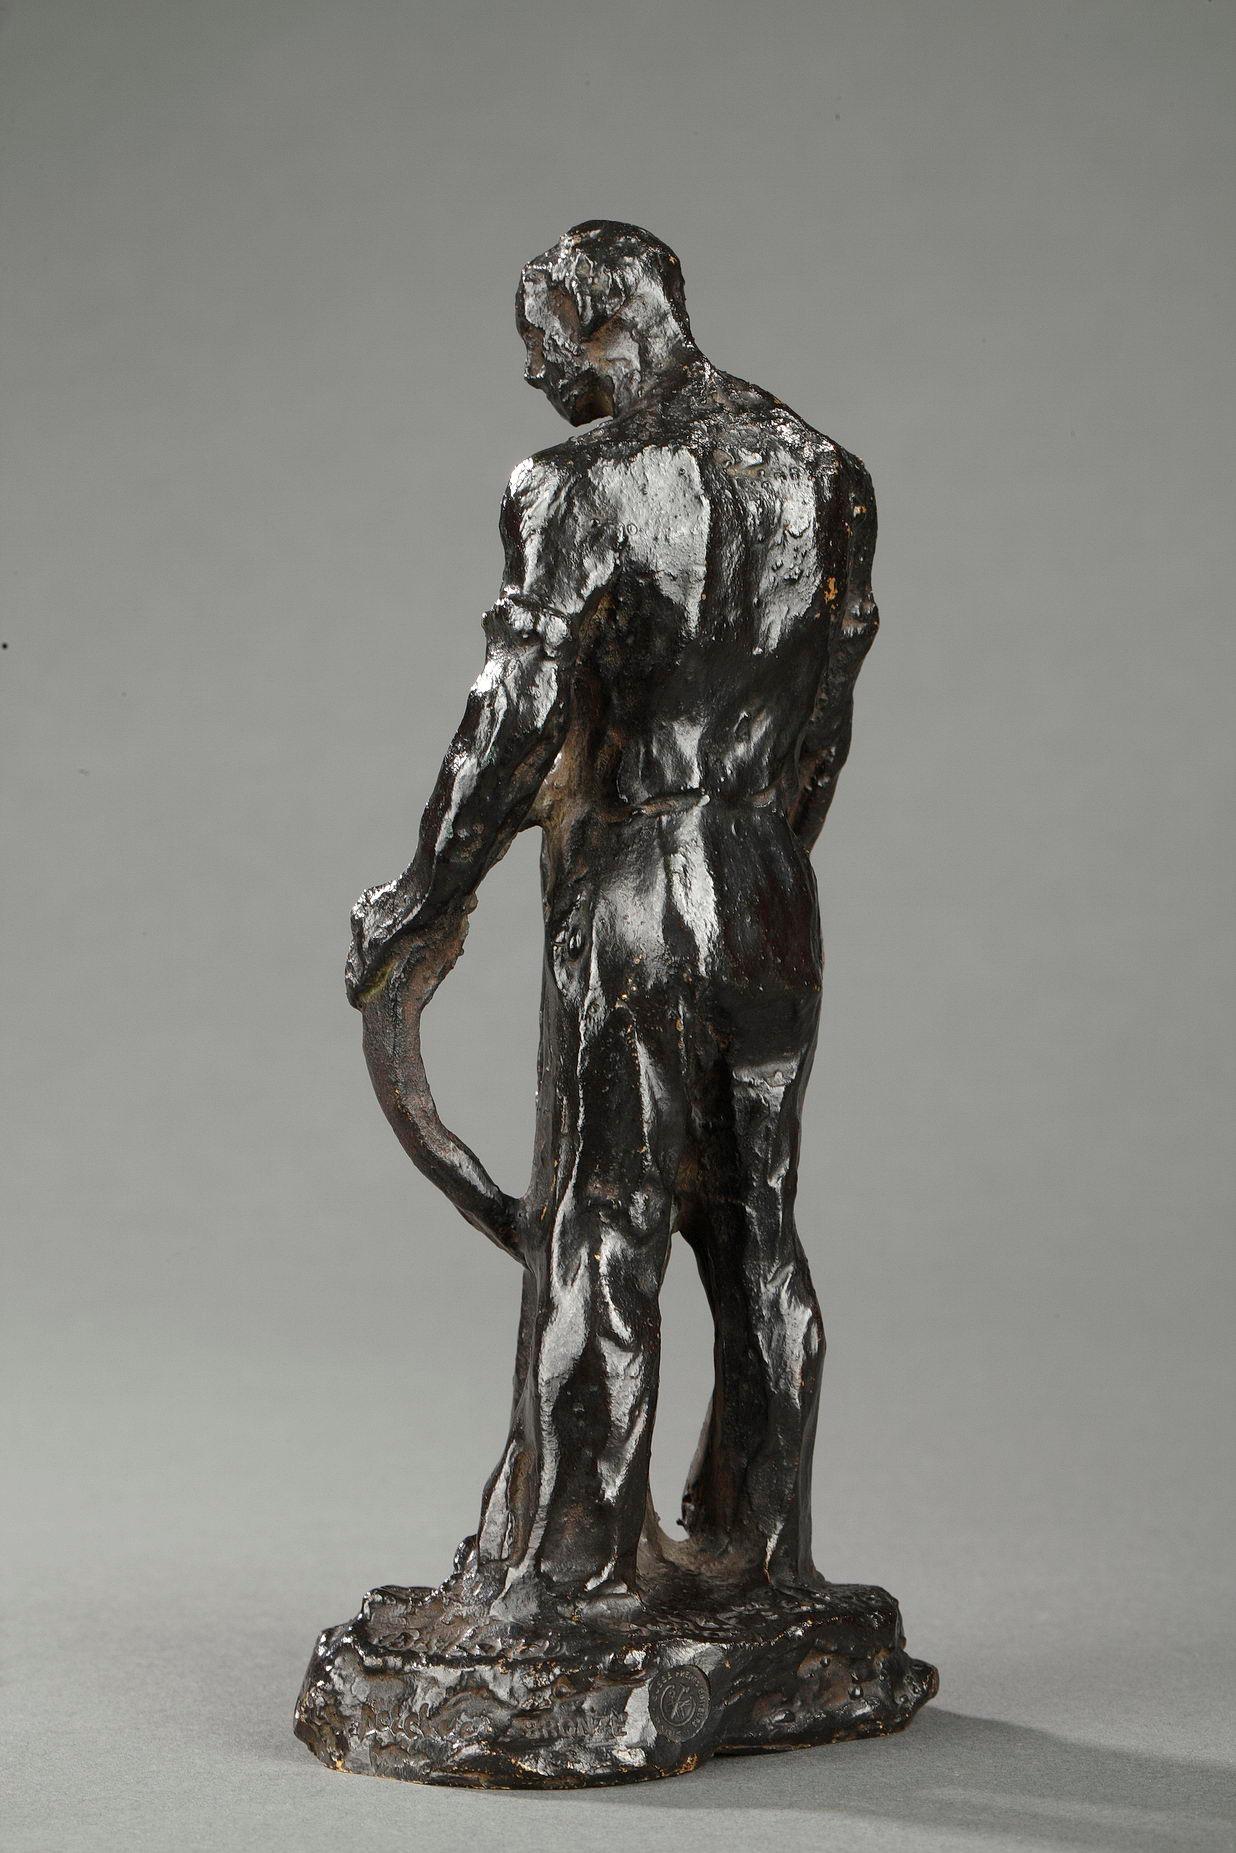 Paver - Gold Figurative Sculpture by Aimé-Jules Dalou